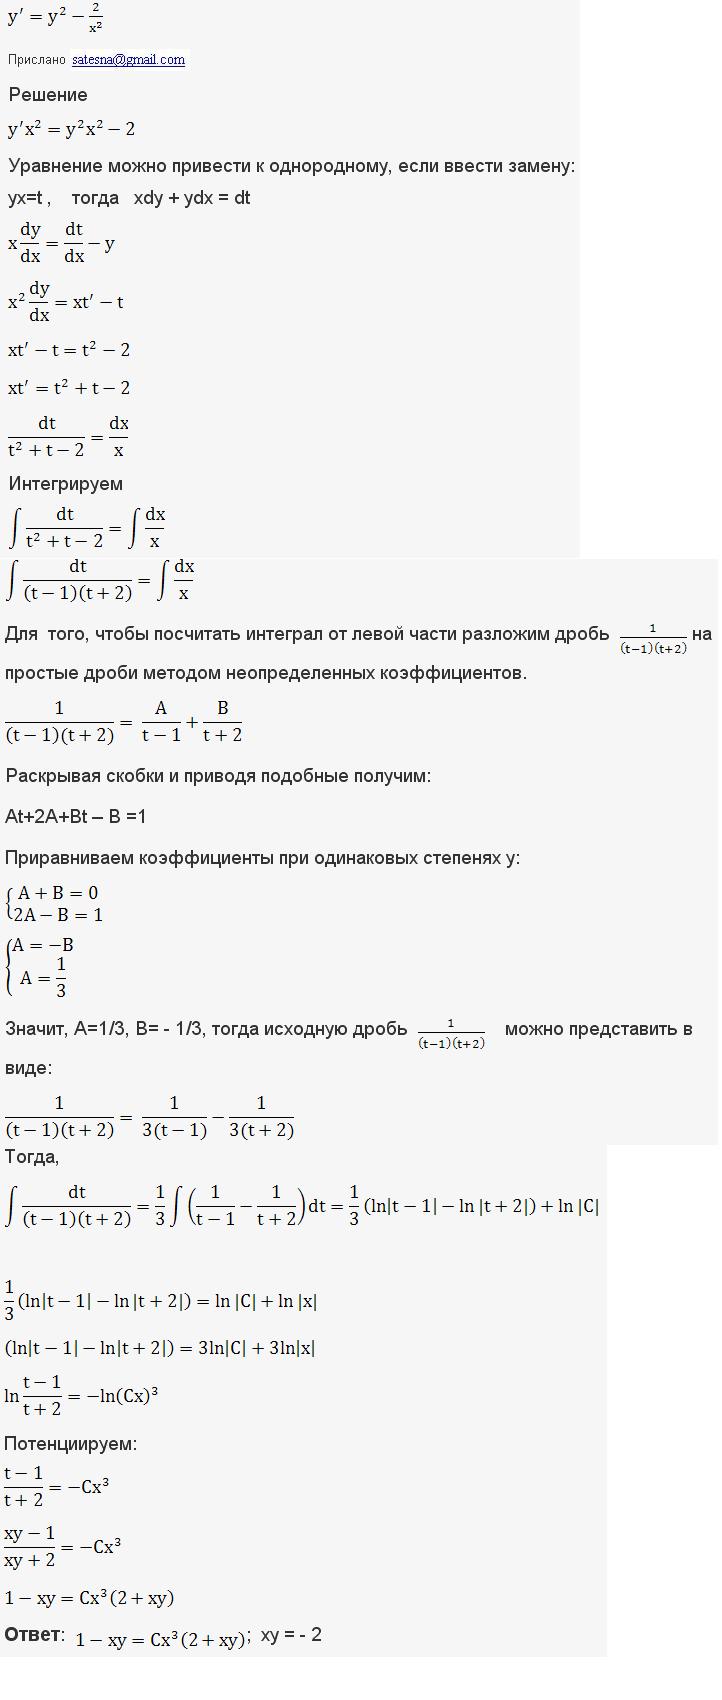 Однородные уравнения - решение задачи 126